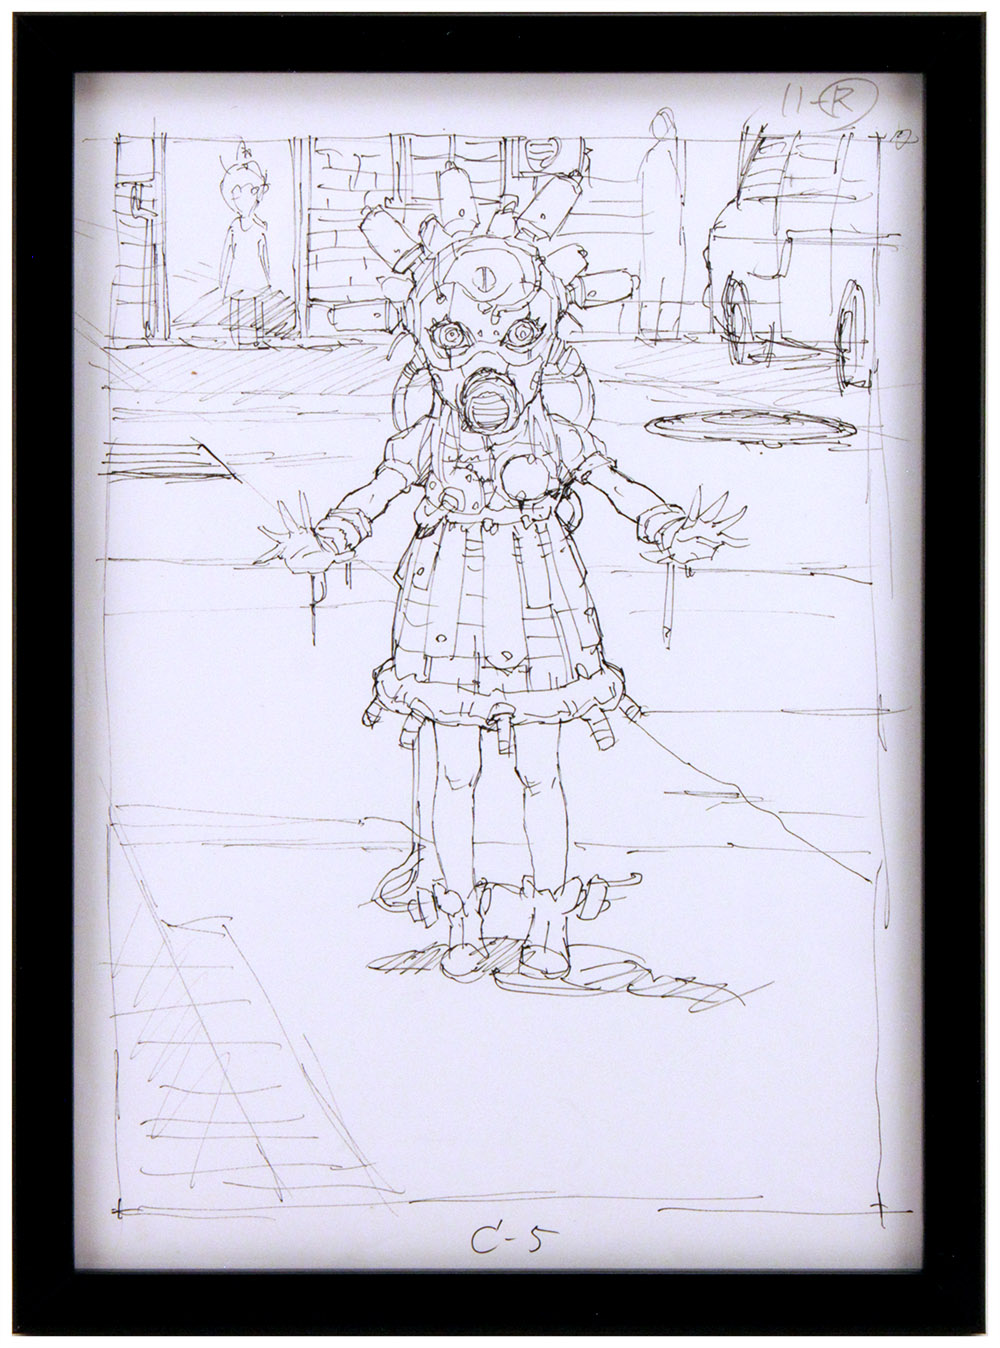 「おめかし」(Dressing  up) - Ink Sketch, Tatsuyuki Tanaka